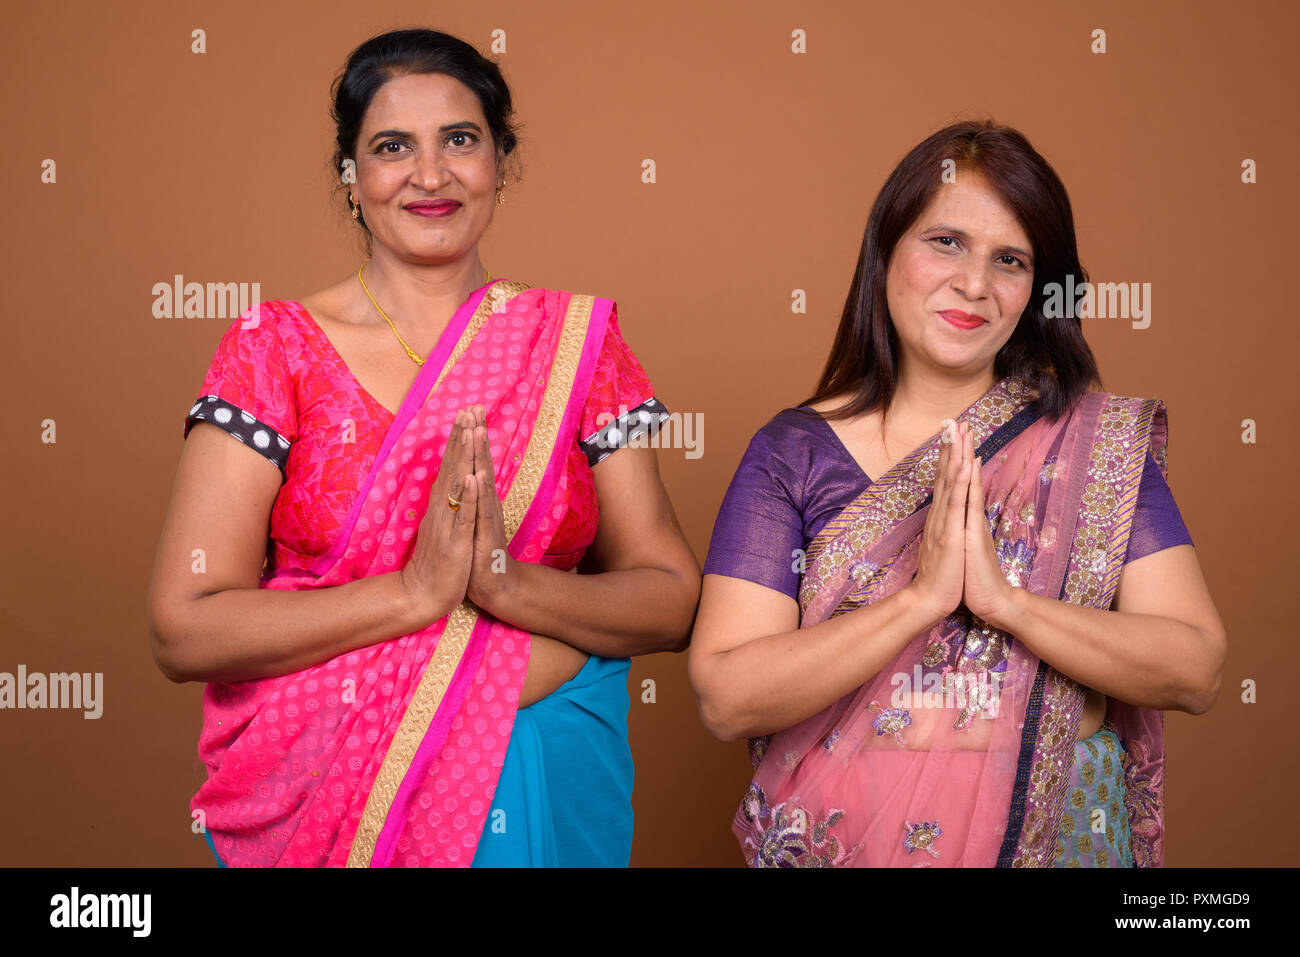 Deux femme indienne portant des vêtements traditionnels greeting Banque D'Images